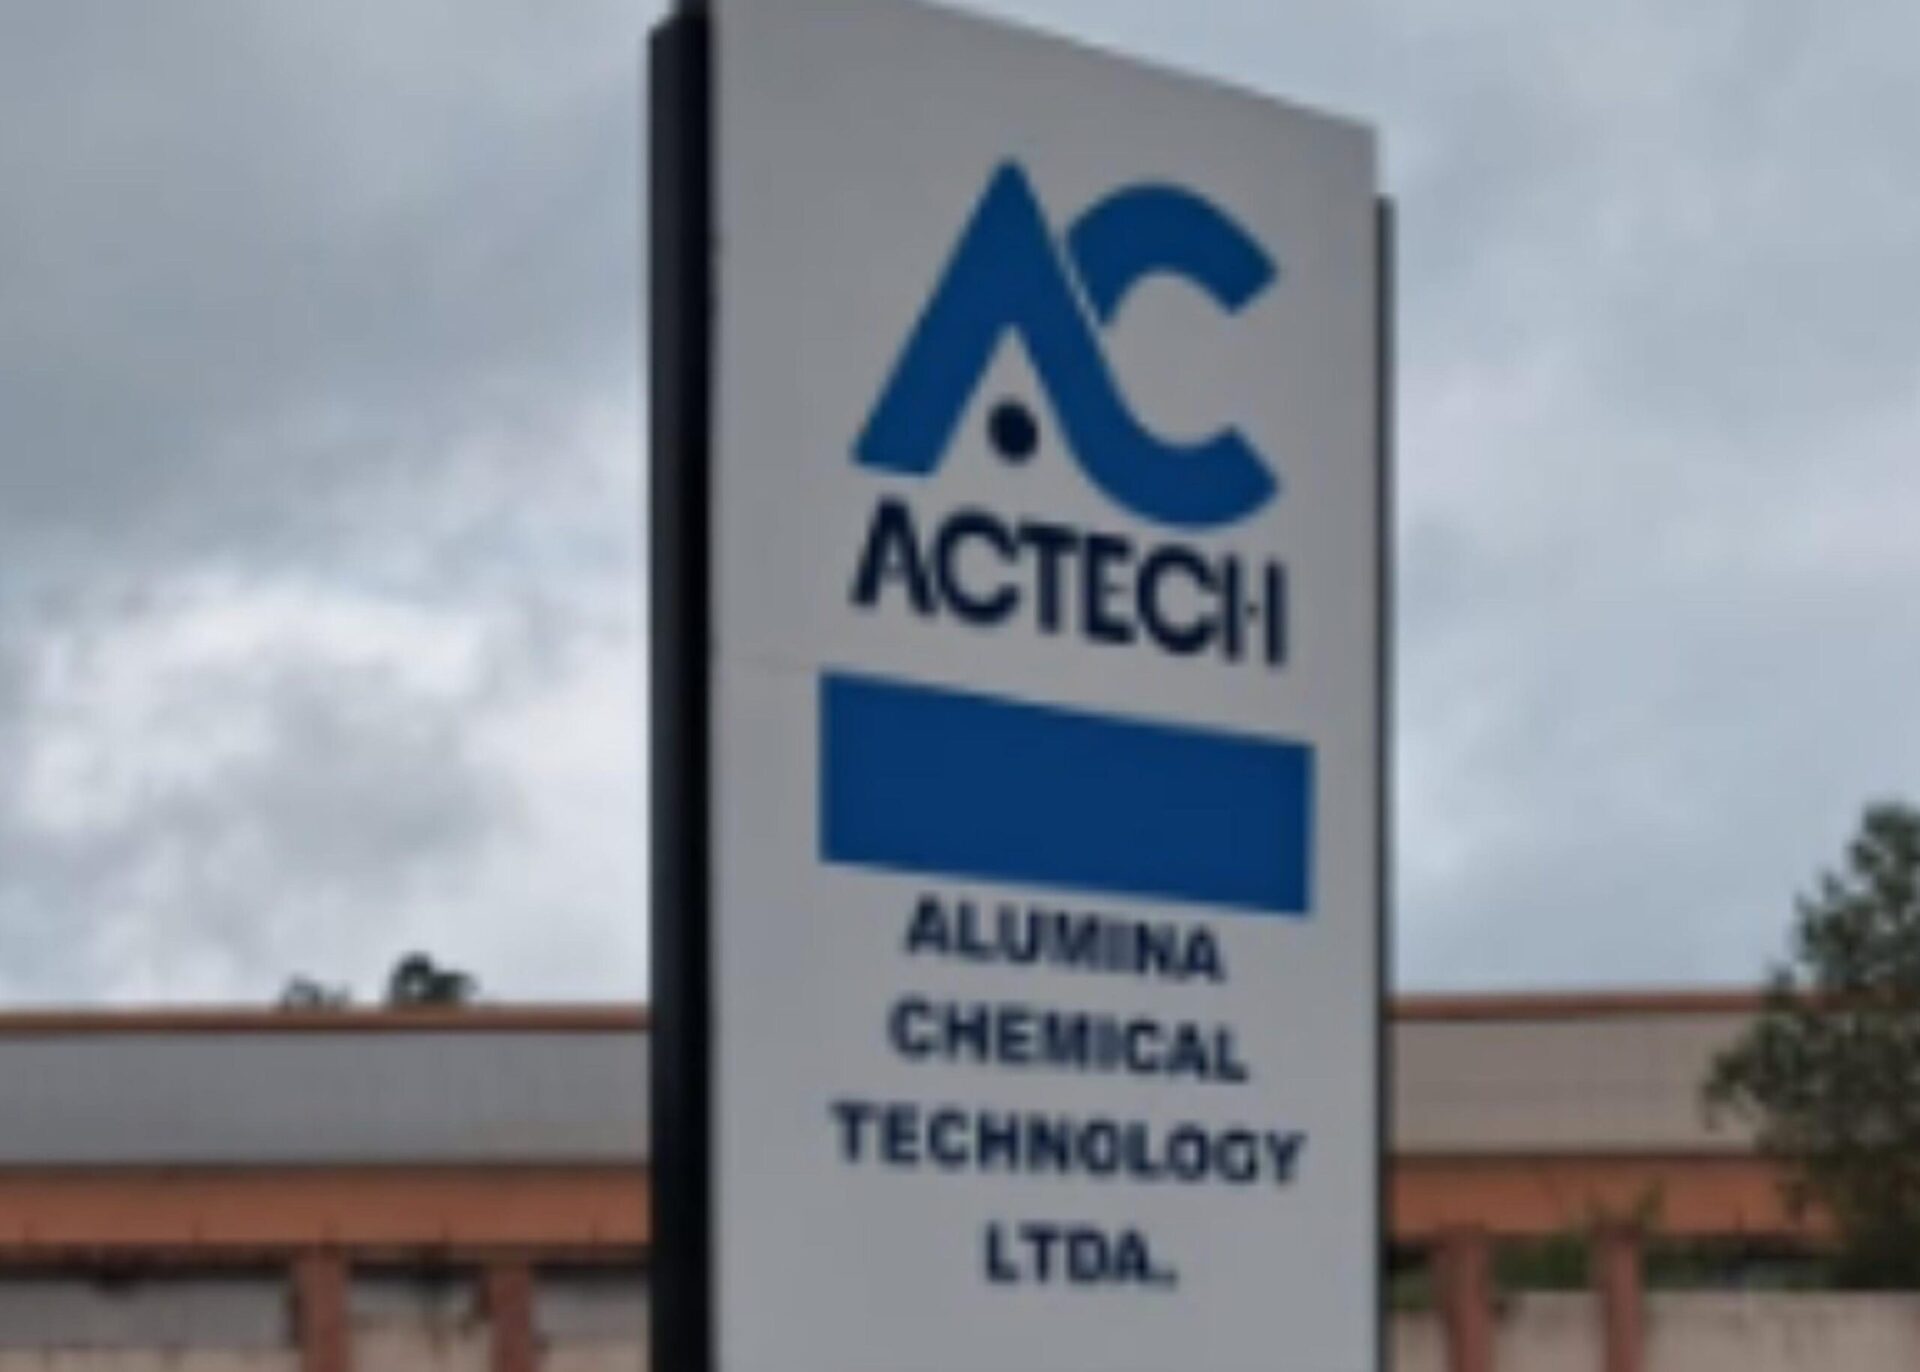 ACTECH oferta vagas de emprego em Ouro Preto e Contagem (MG)